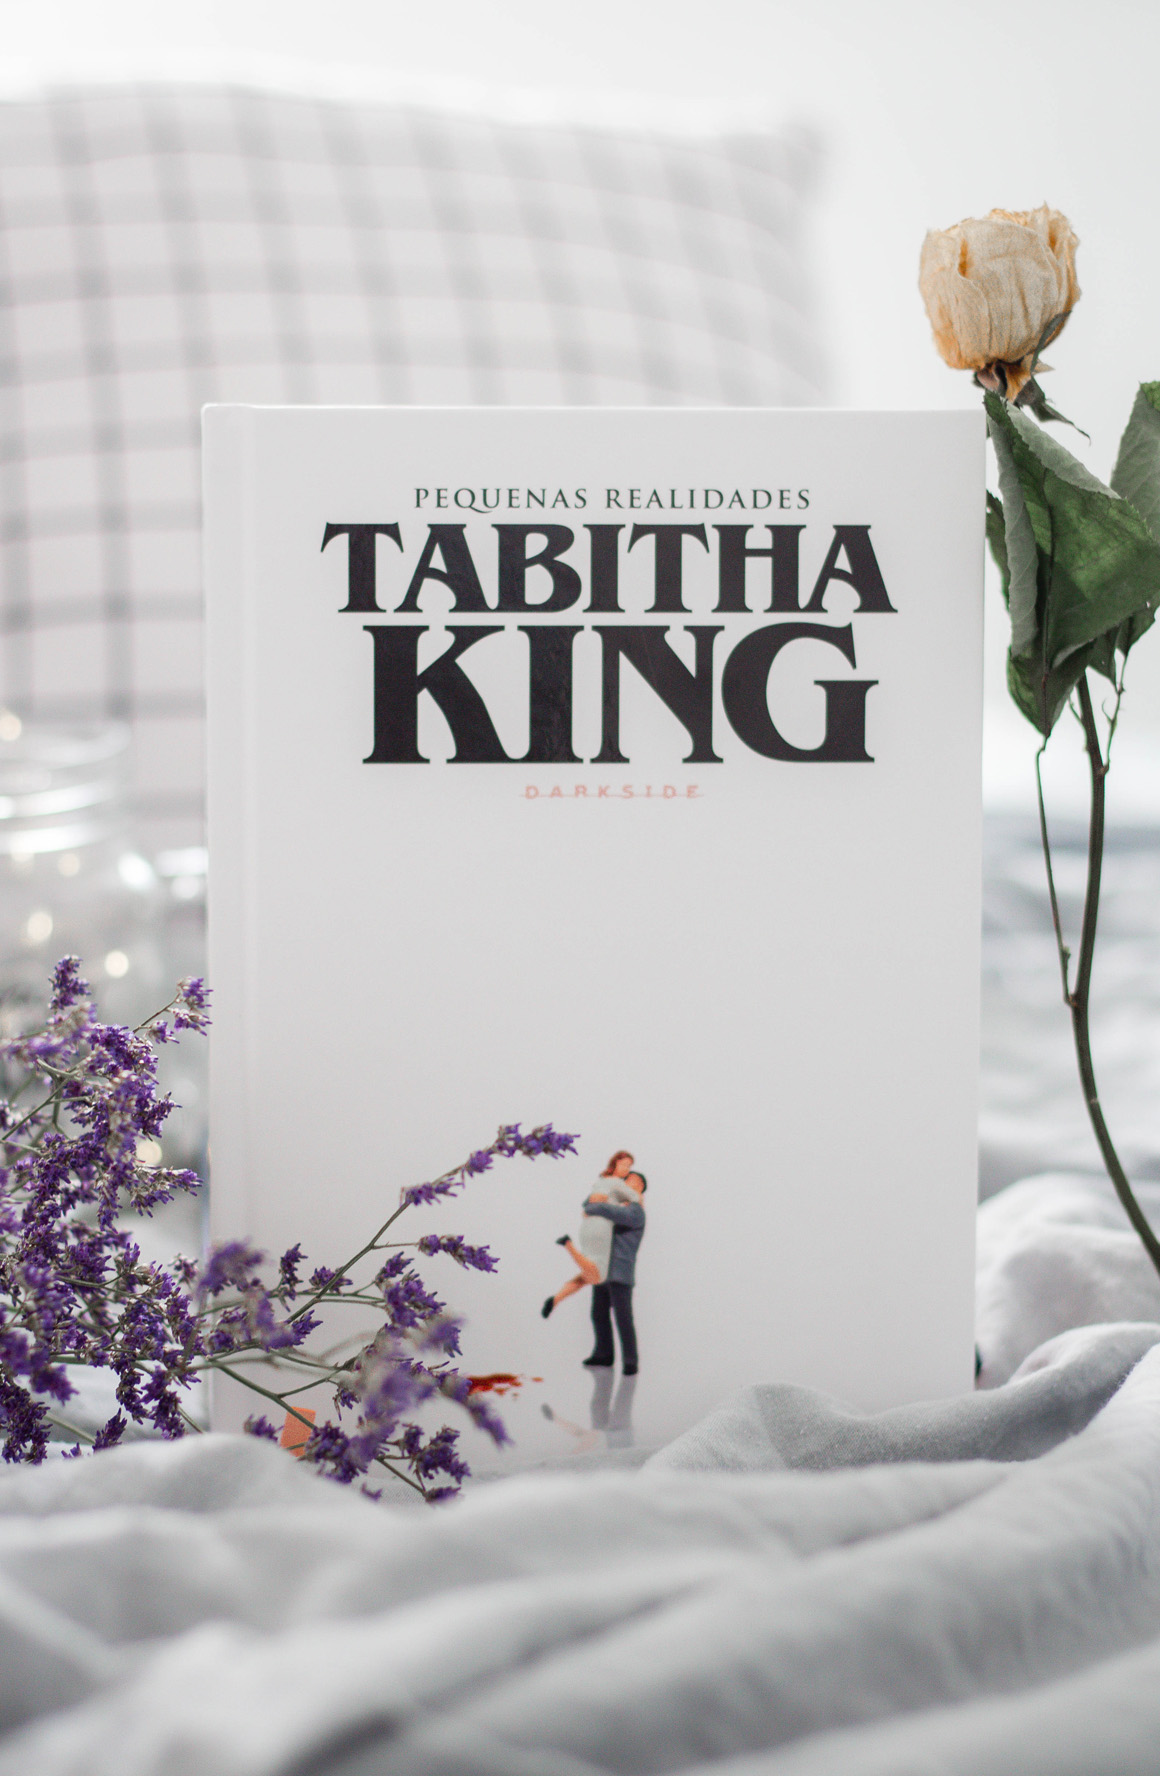 Thabita King Darkside Books